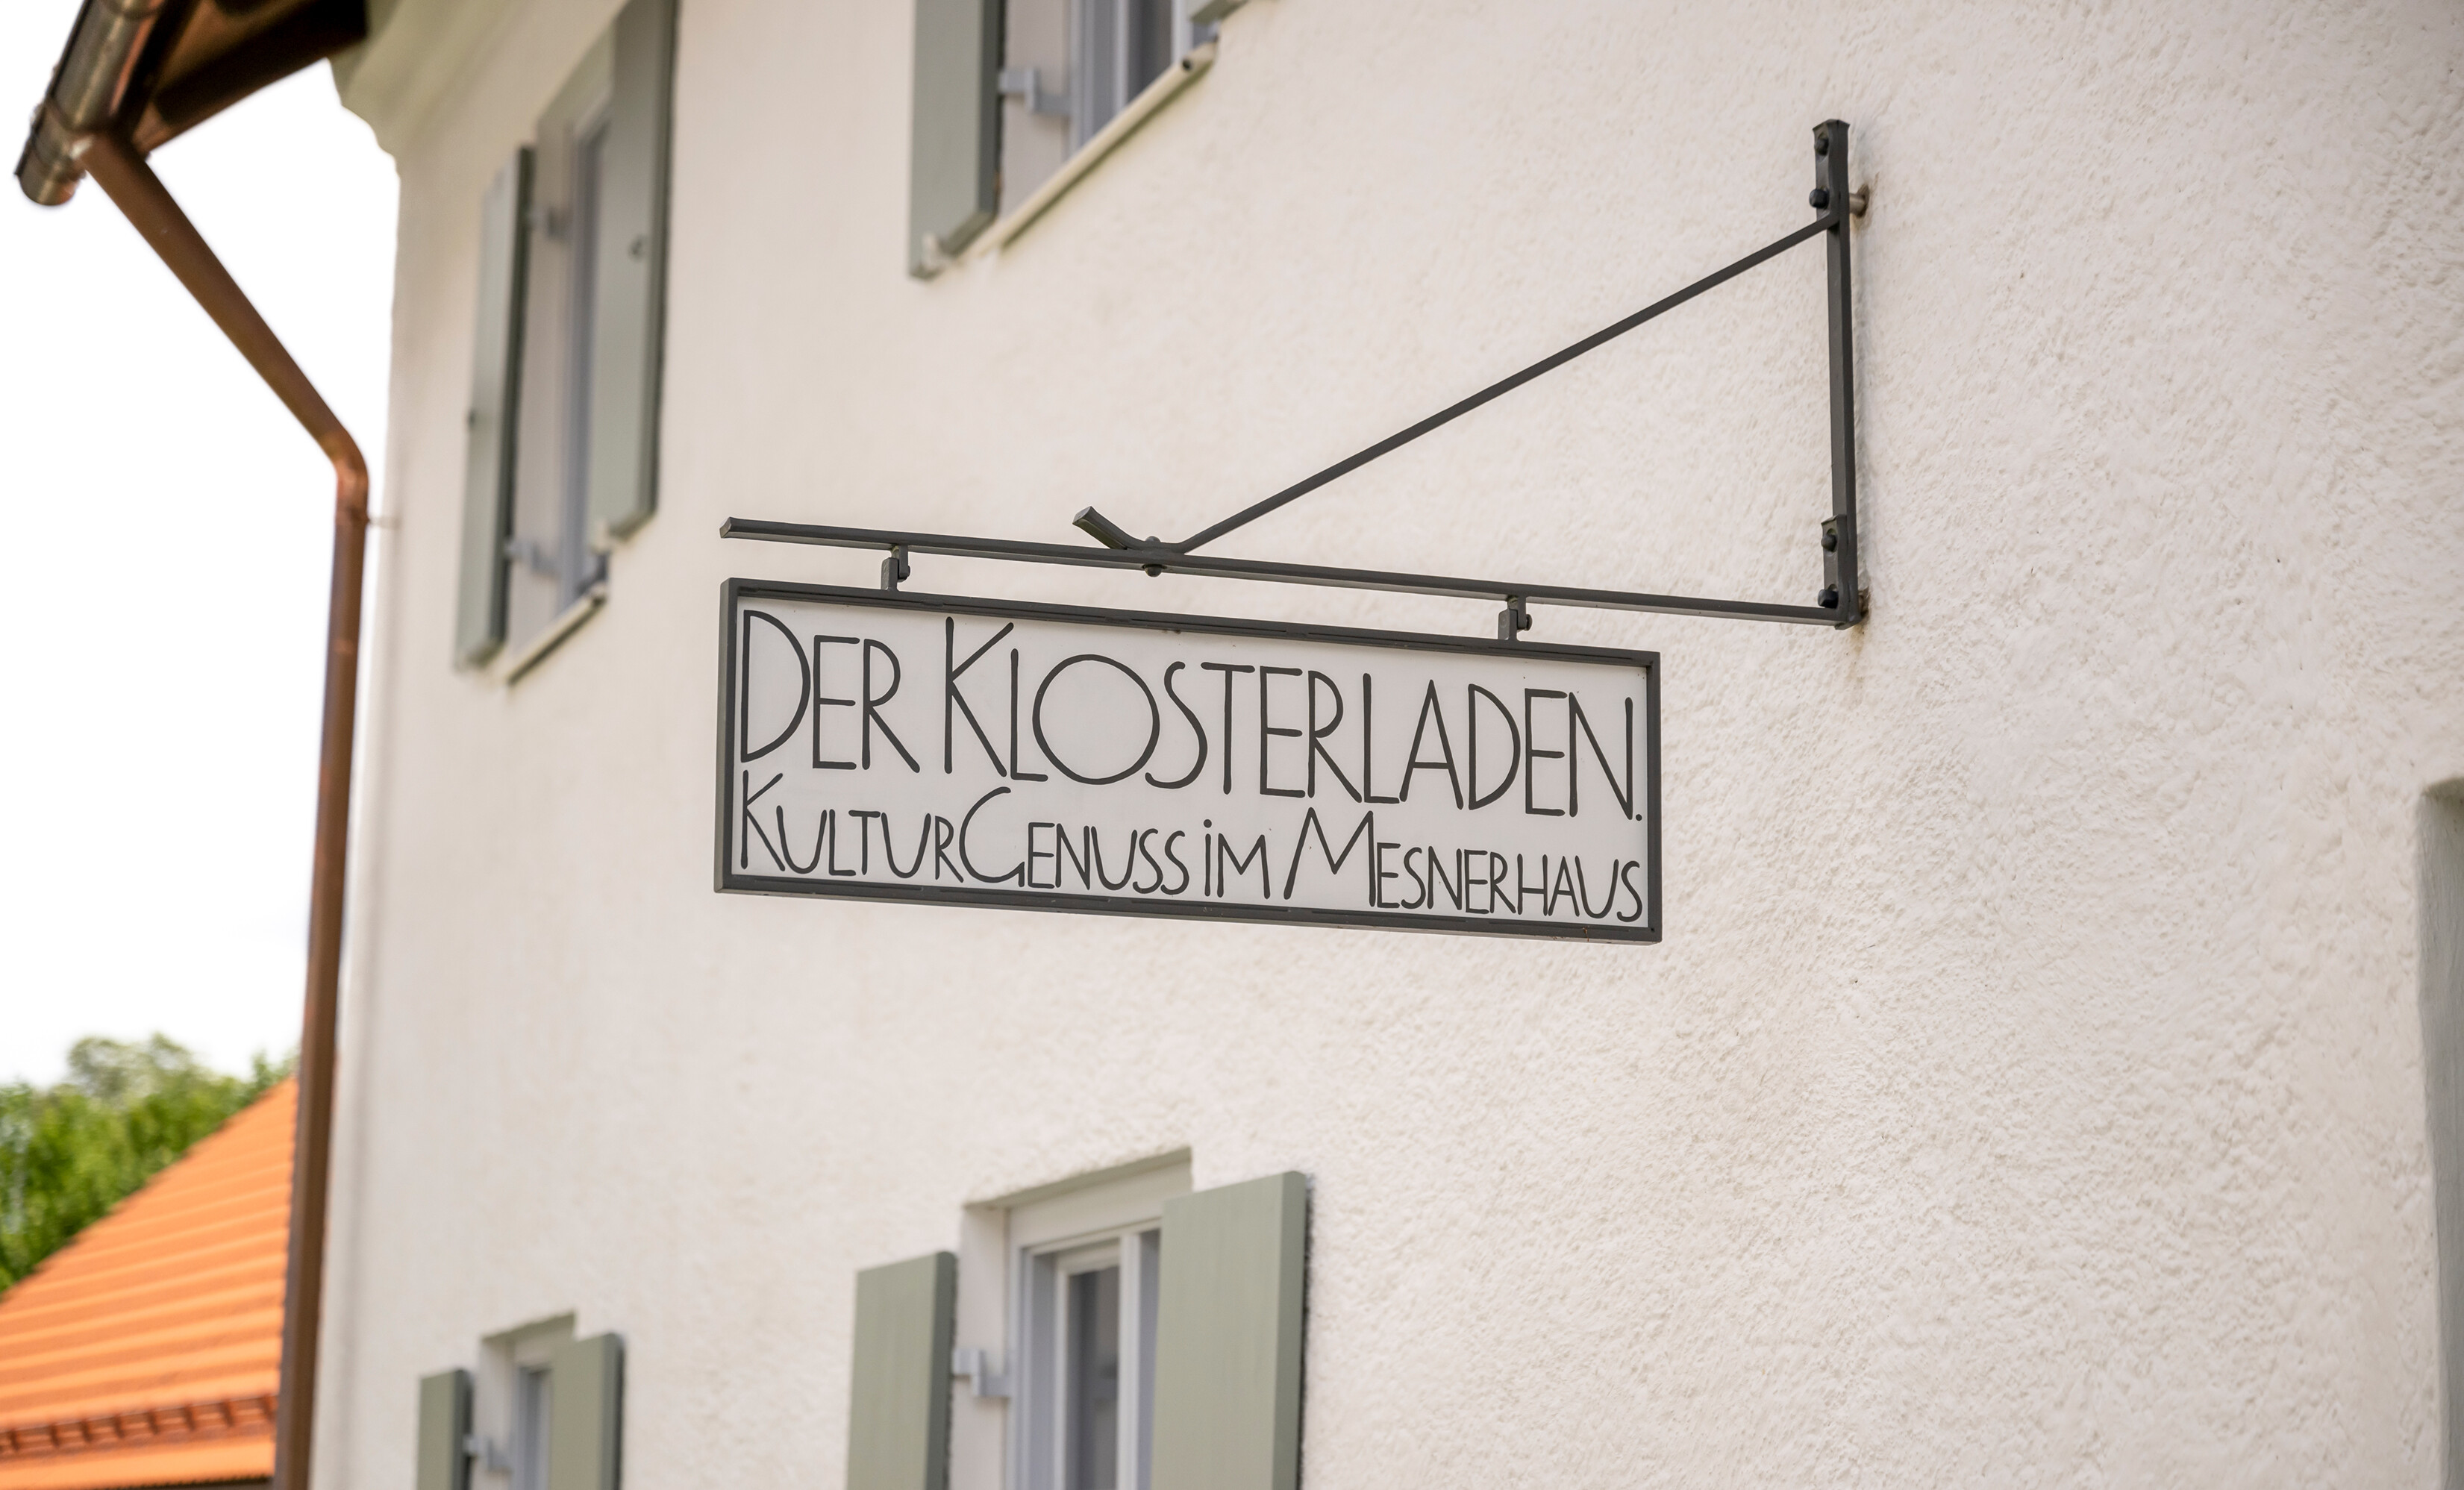 Das Schild über dem Eingang zum Klosterladen im Mesnerhaus, worauf steht: Der klosterladen. KulturGenuss im Mesnerhaus